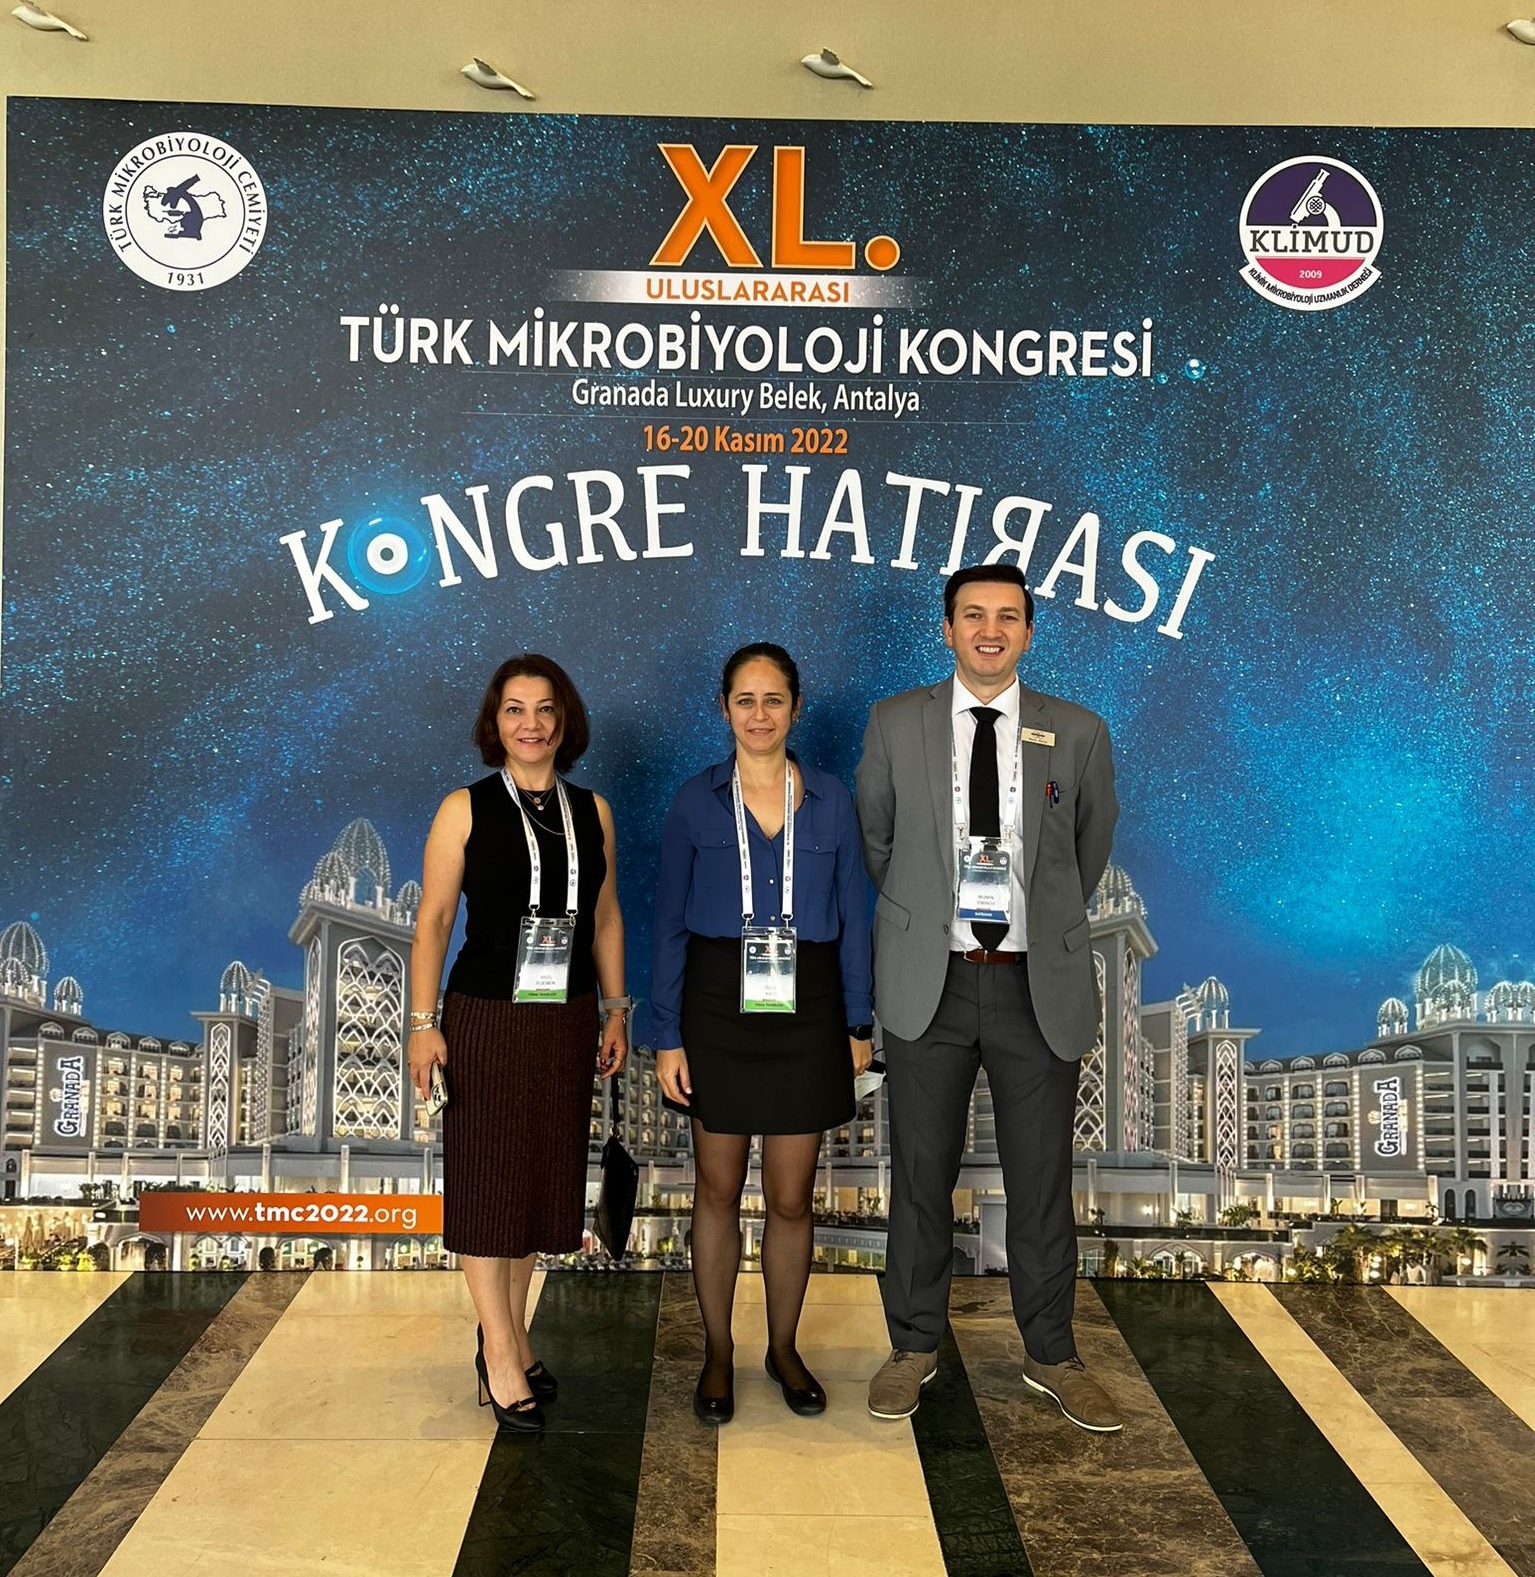 XL. Uluslararası Türk Mikrobiyoloji Kongresi